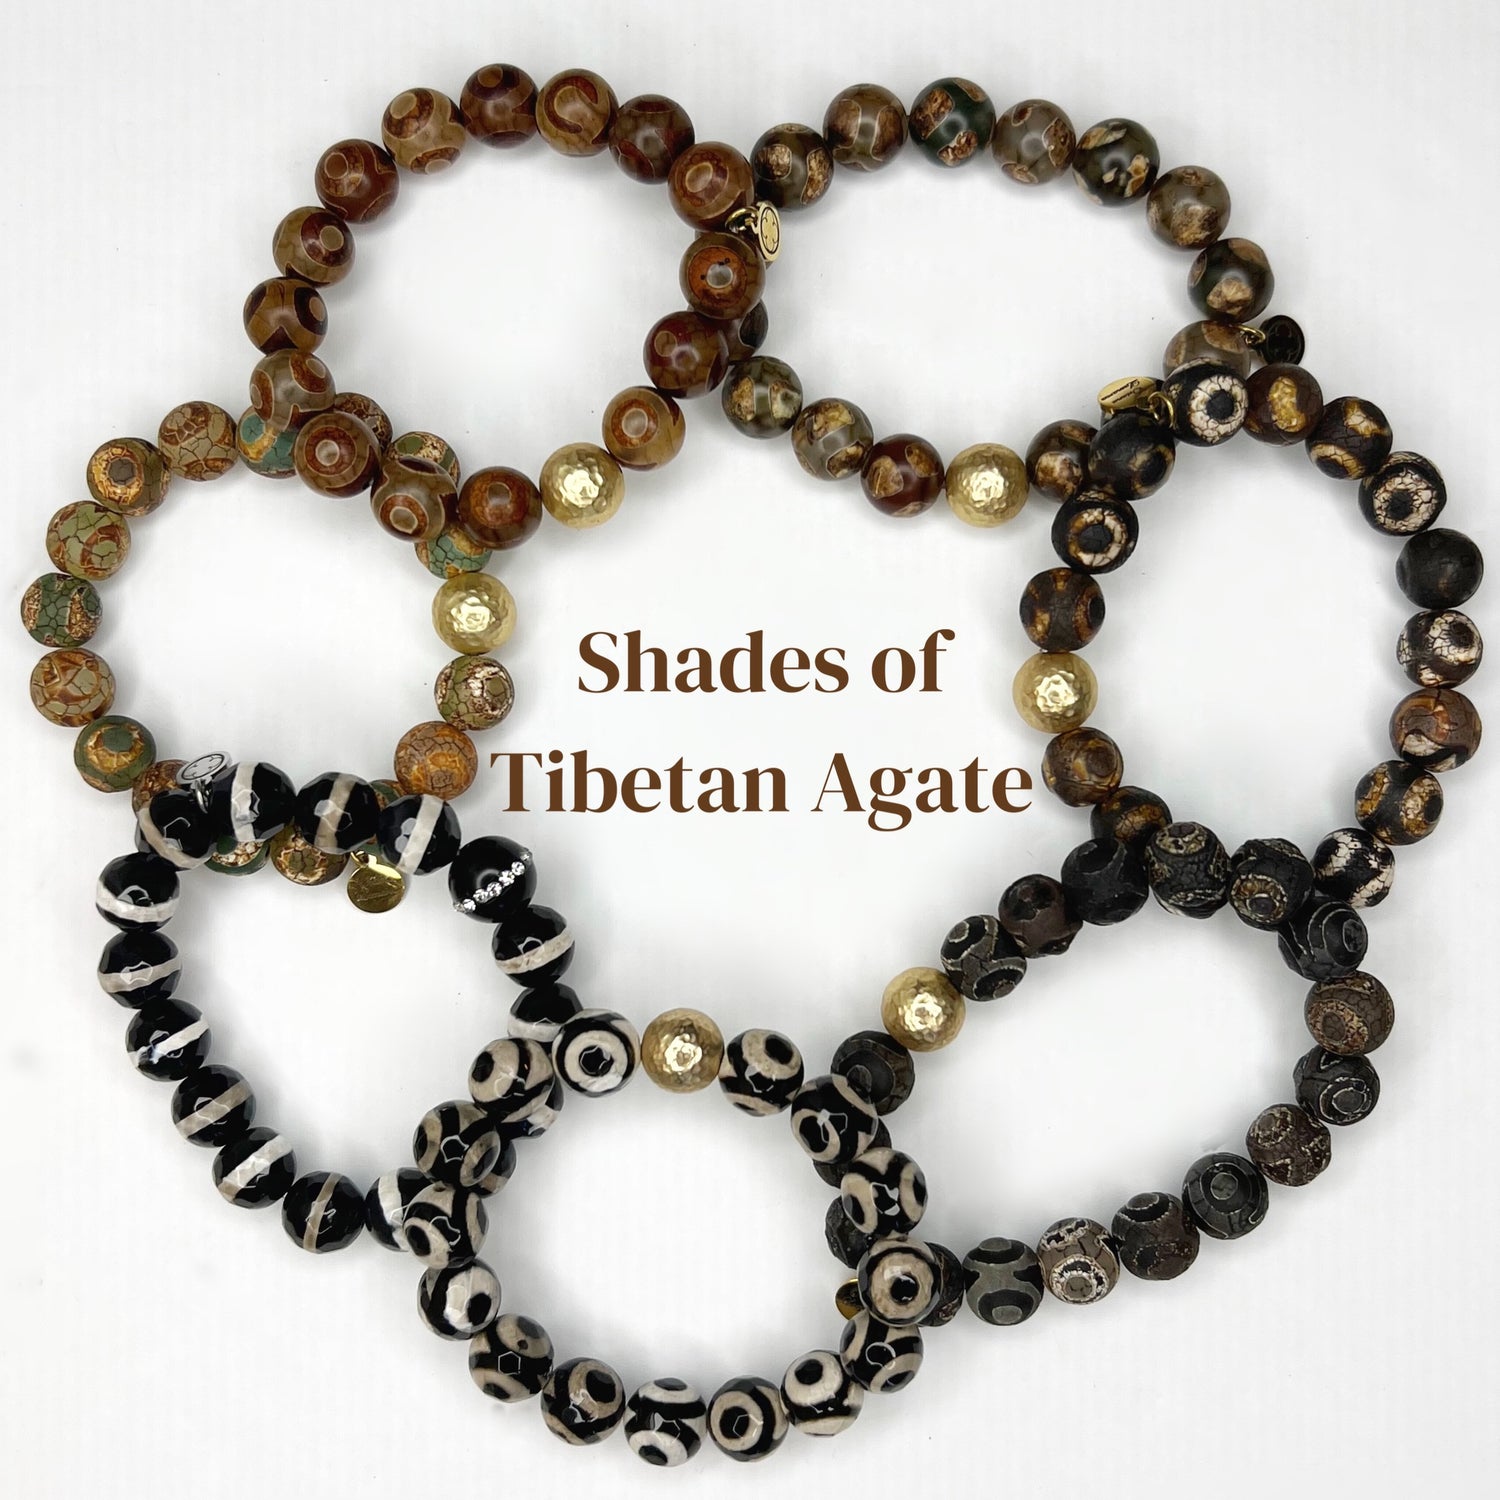 Shades of Tibetan Agate